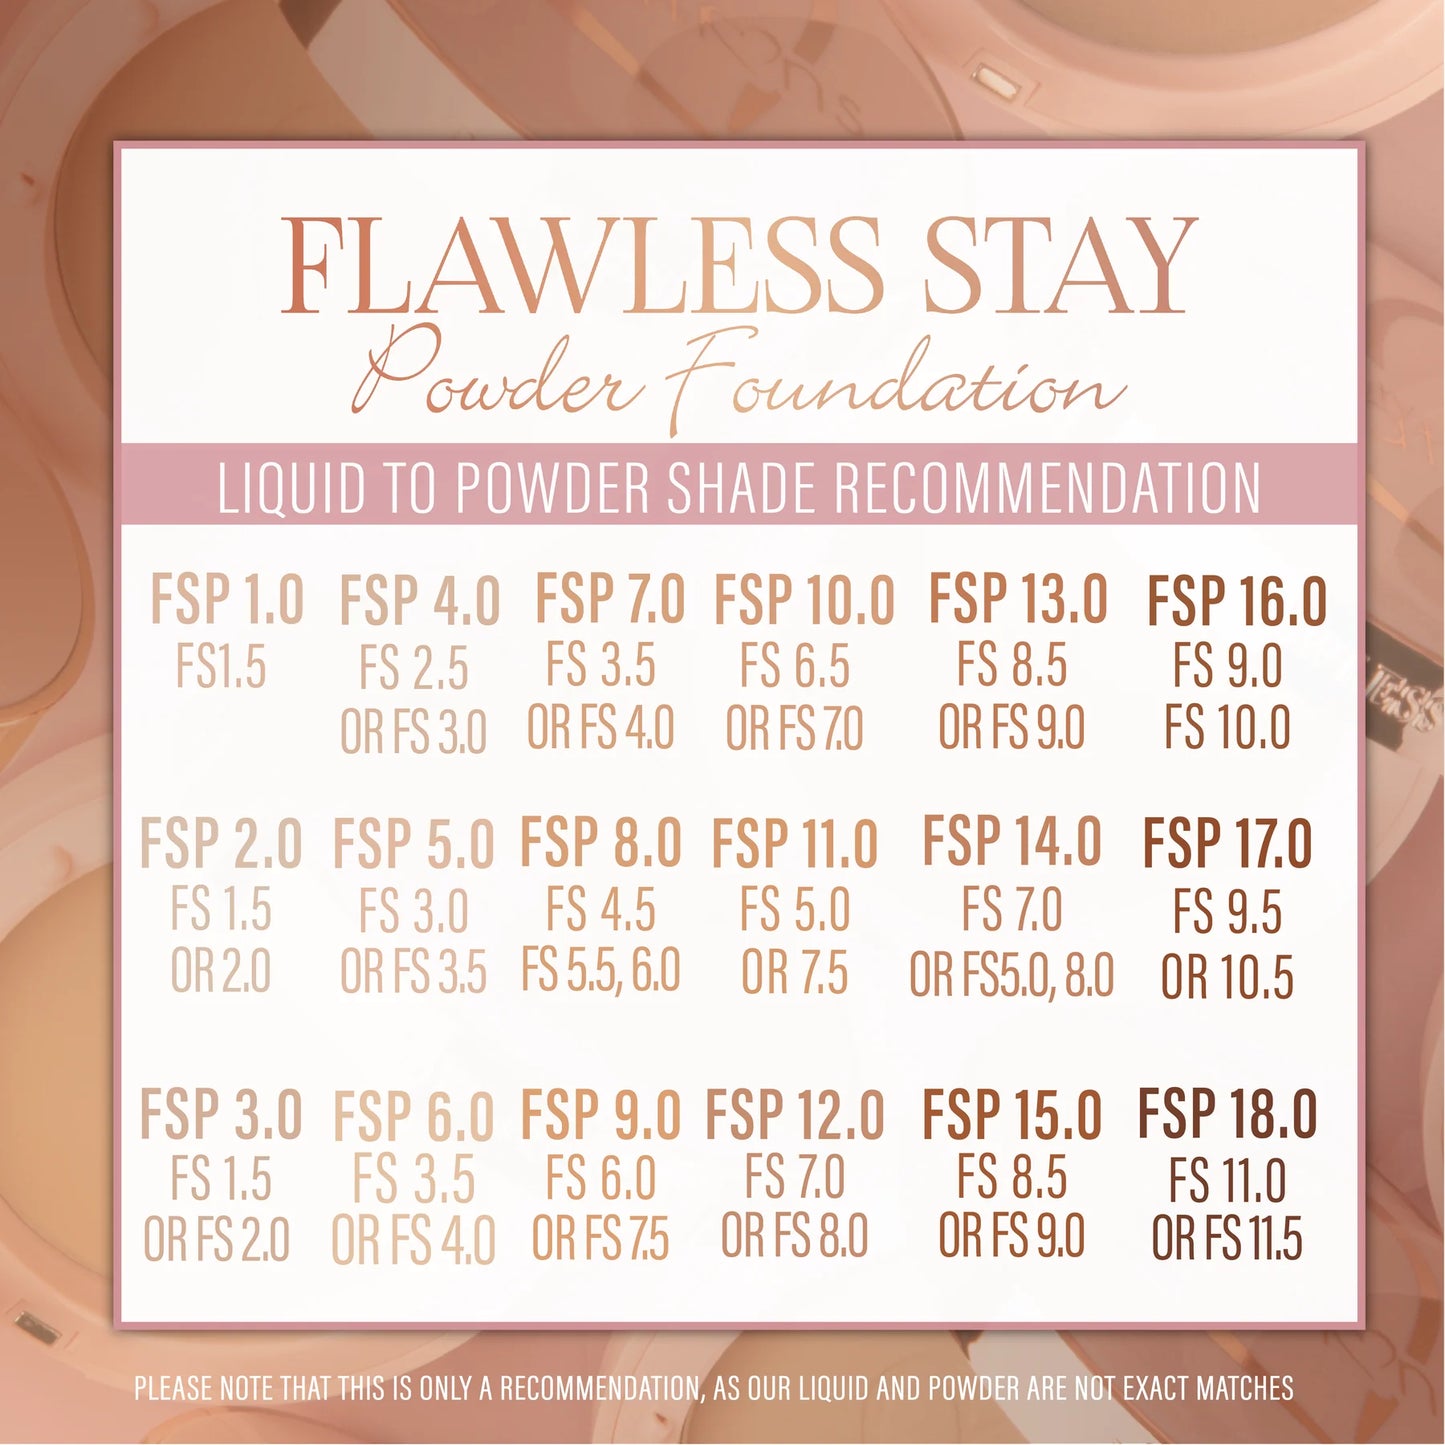 11.0 - Flawless Stay Powder Foundation